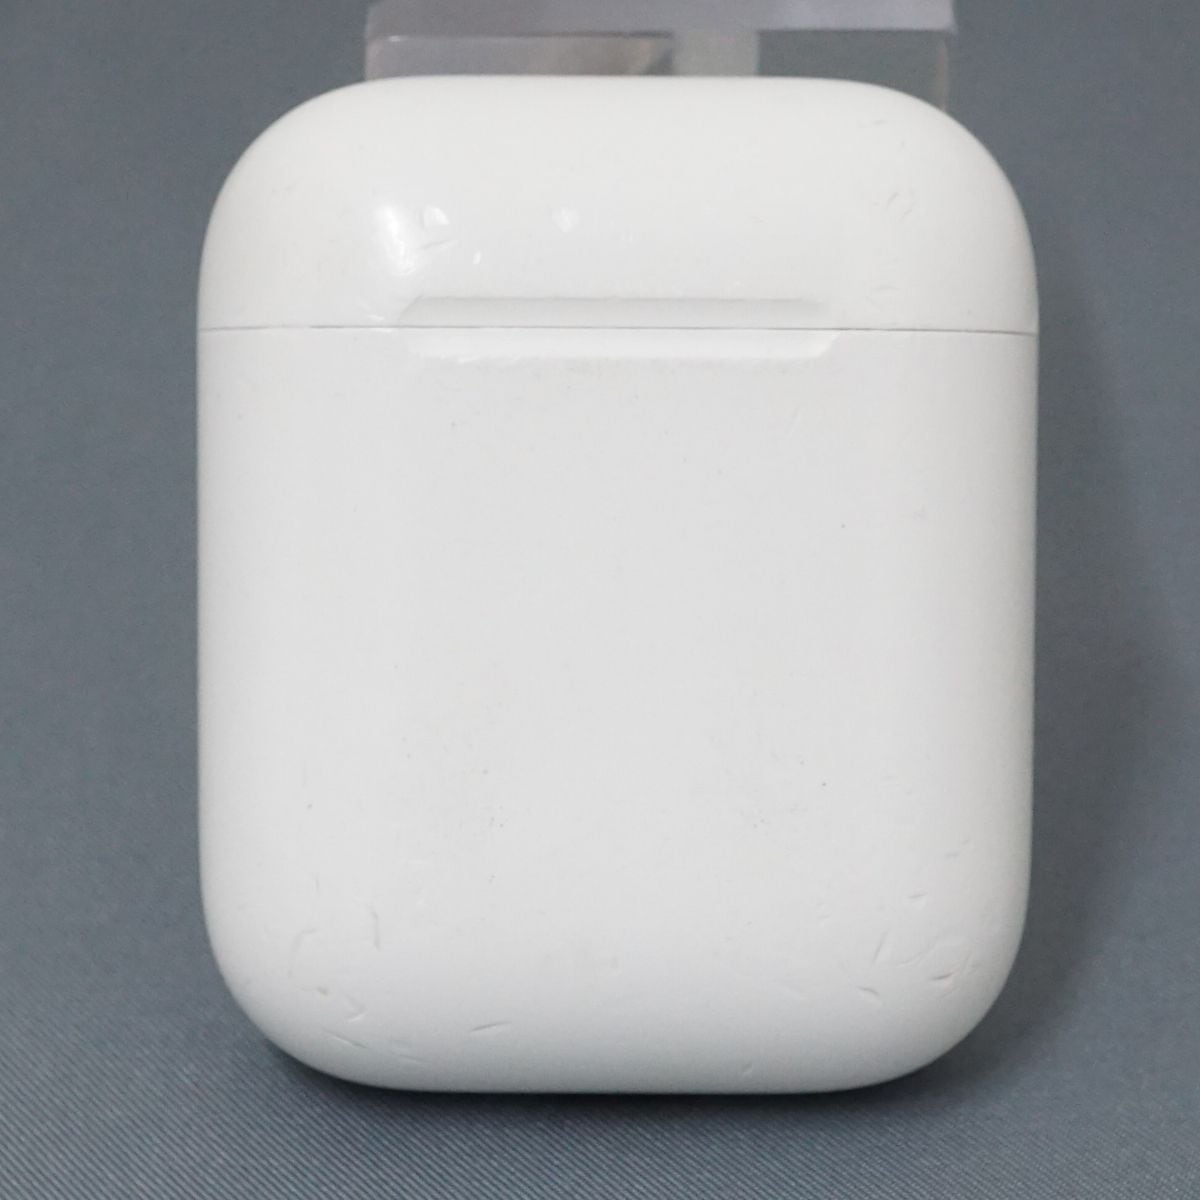 ☆ Apple AirPods 第一世代 ケースのみ - イヤフォン